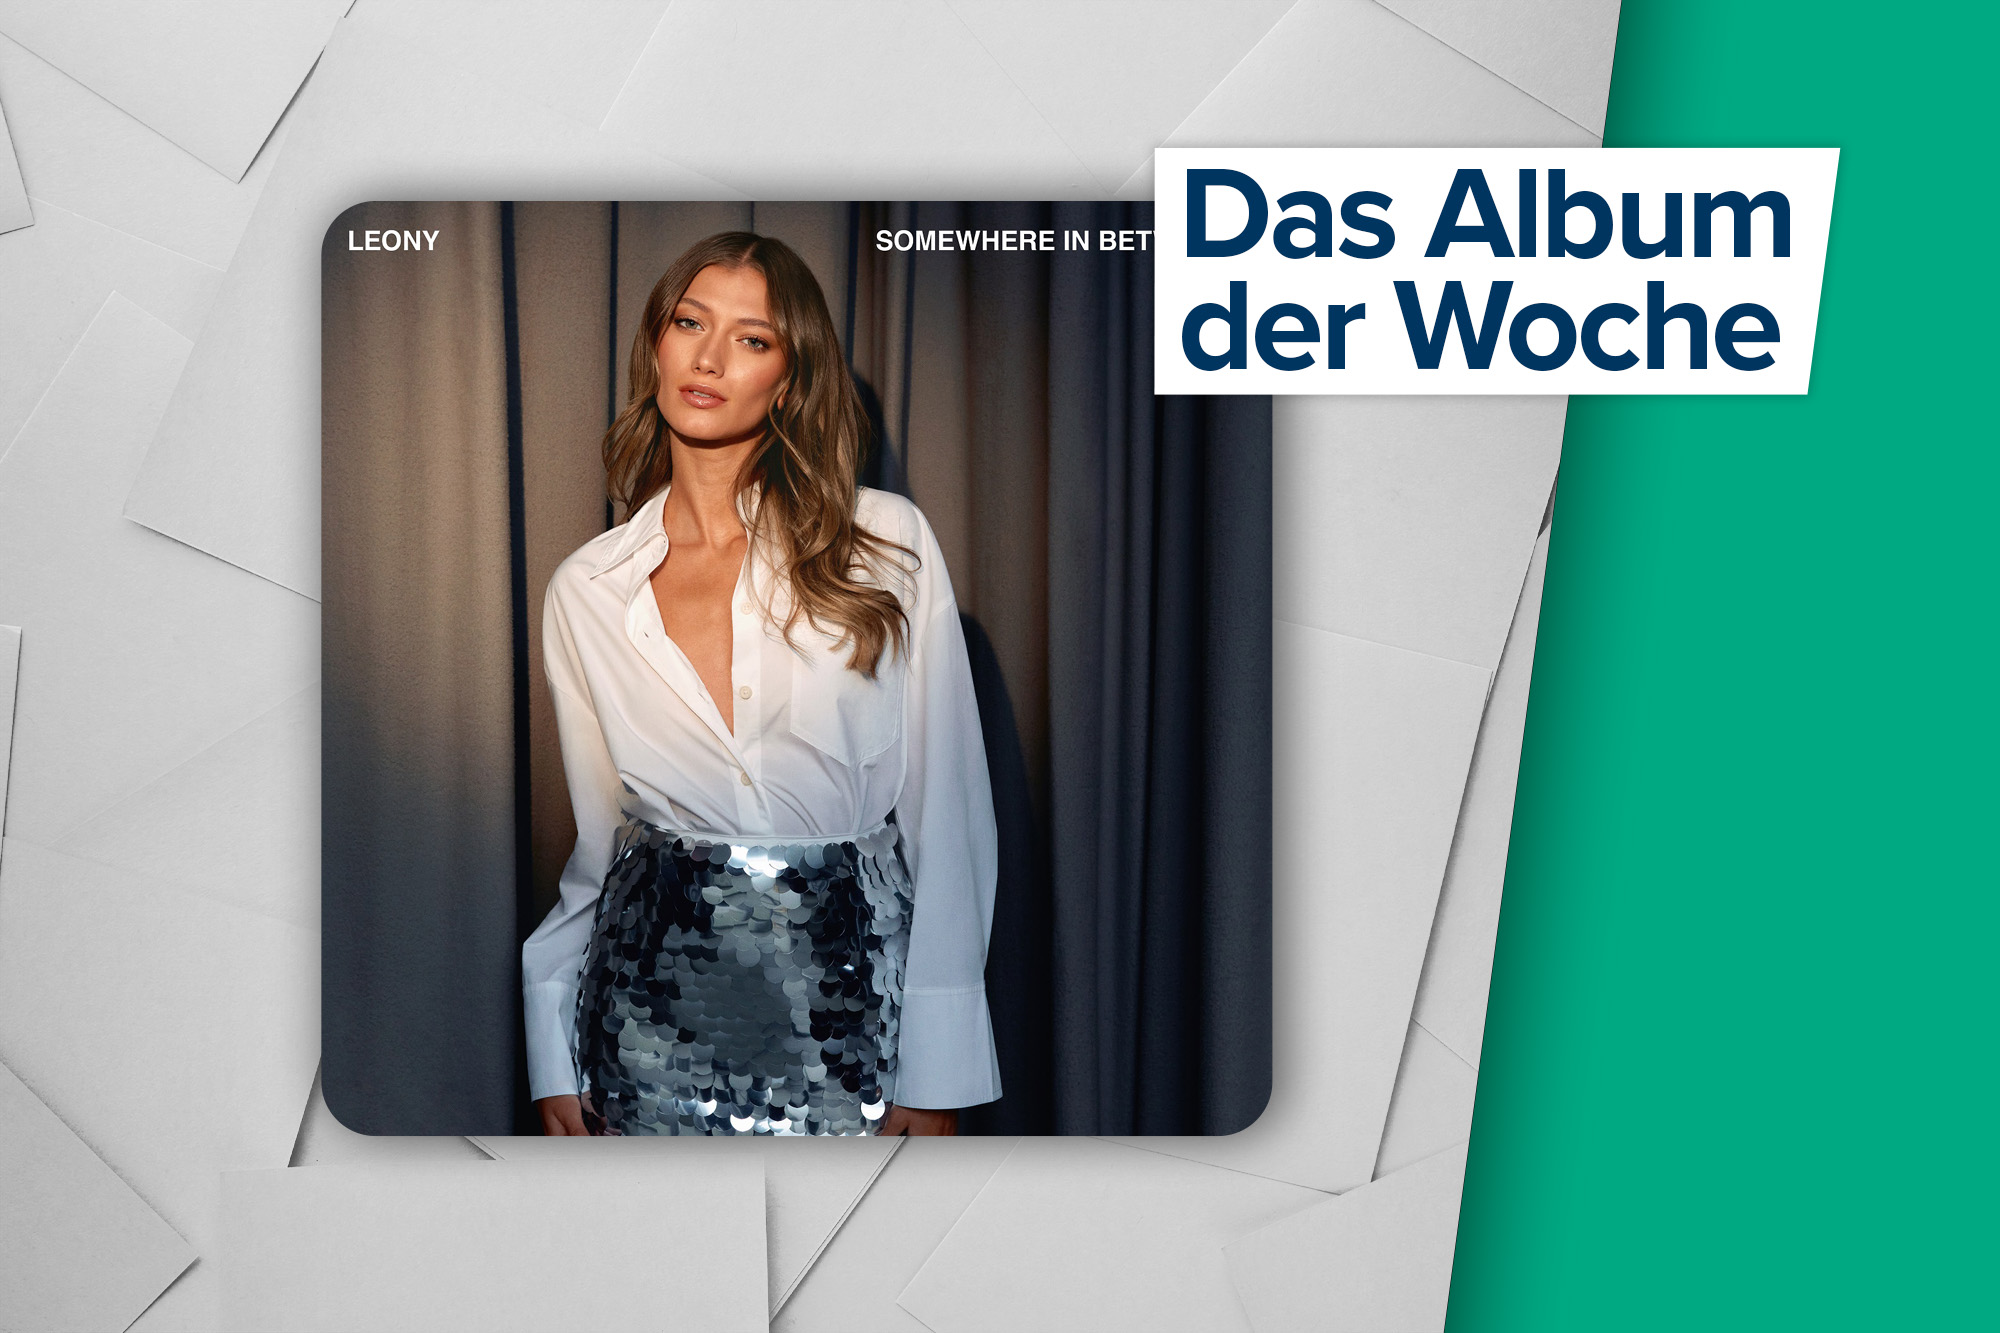 Das Album der Woche: "Somewhere in between" von Leony (Kontor Records GmbH)